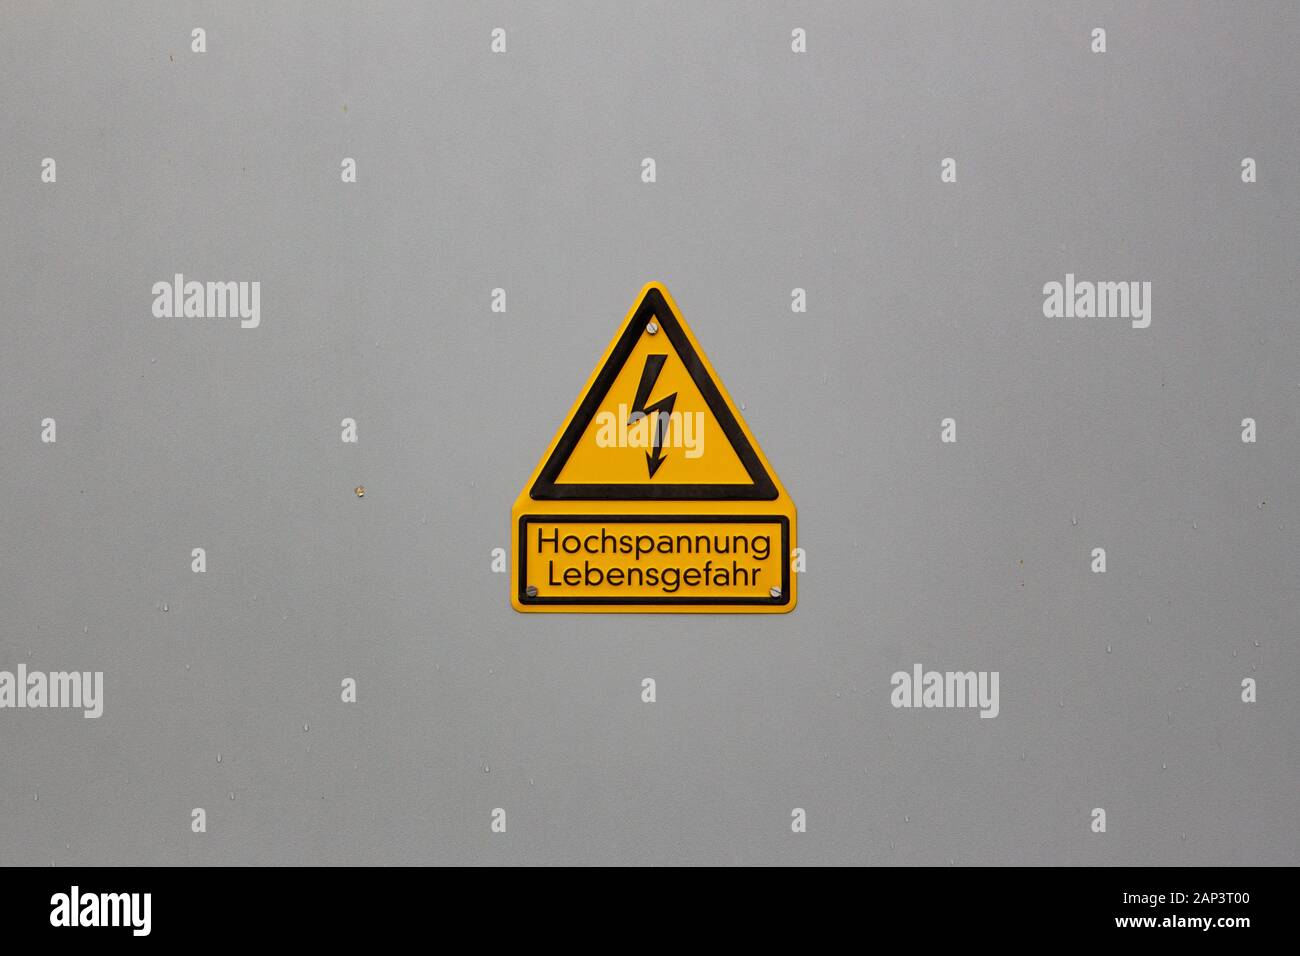 Alemán la señal de advertencia "Peligro de alta tensión a la vida", en alemán "Hochspannung, Lebensgefahr' en el centro de una planicie pared con copyspace alrededor Foto de stock